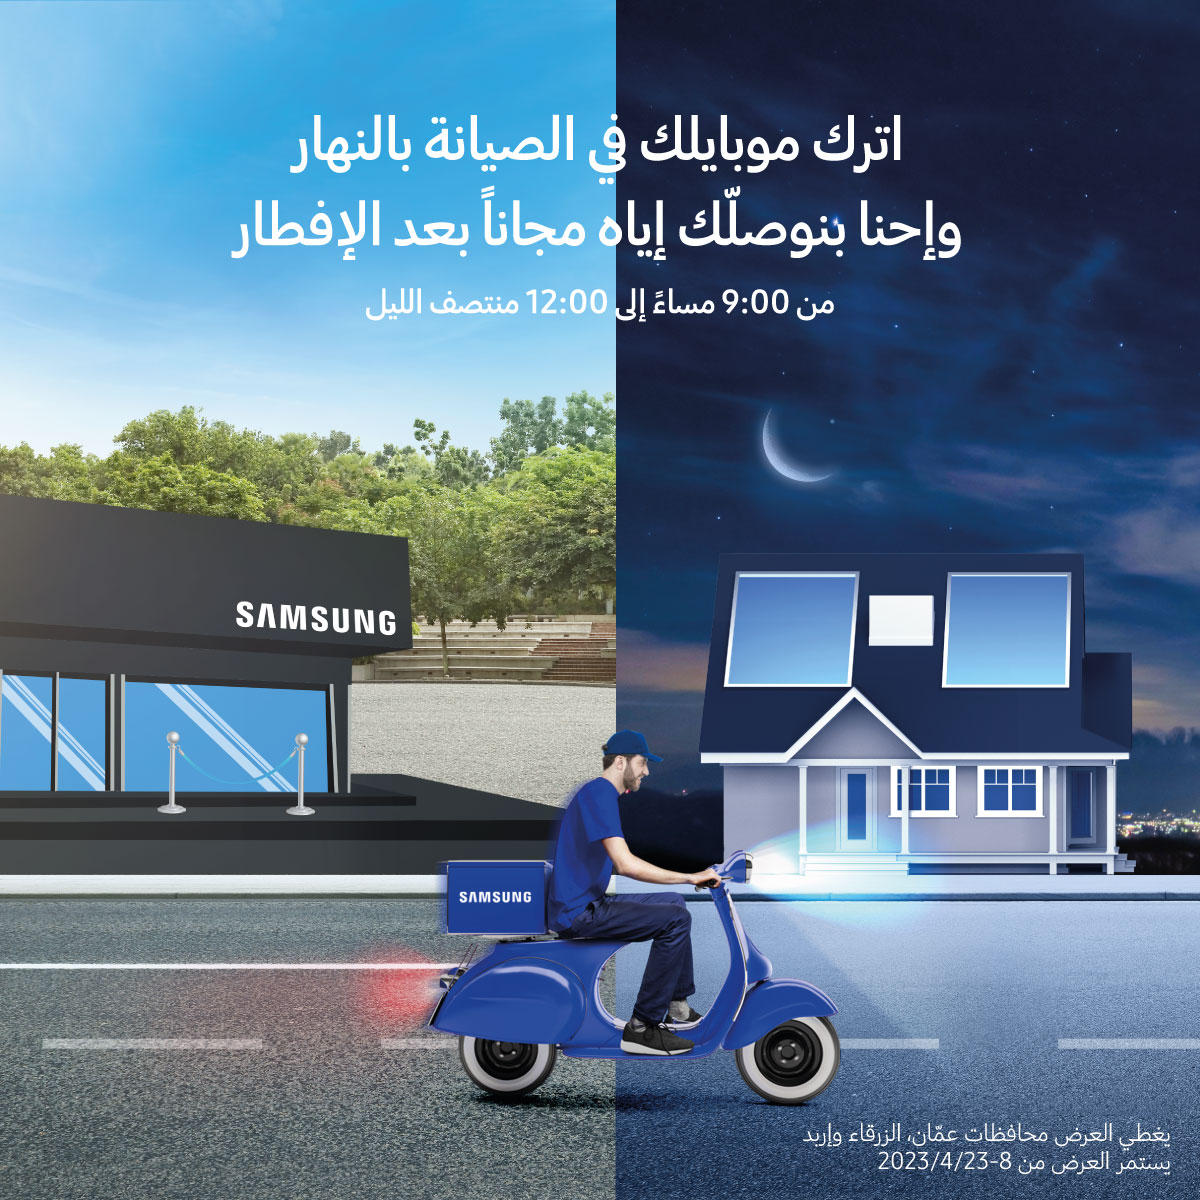 《سامسونج إلكترونيكس》 المشرق العربي تقدم خدمة توصيل الهواتف الذكية من مراكز الصيانة الخاصة بها للزبائن تسهيلاً عليهم خلال الشهر الفضيل